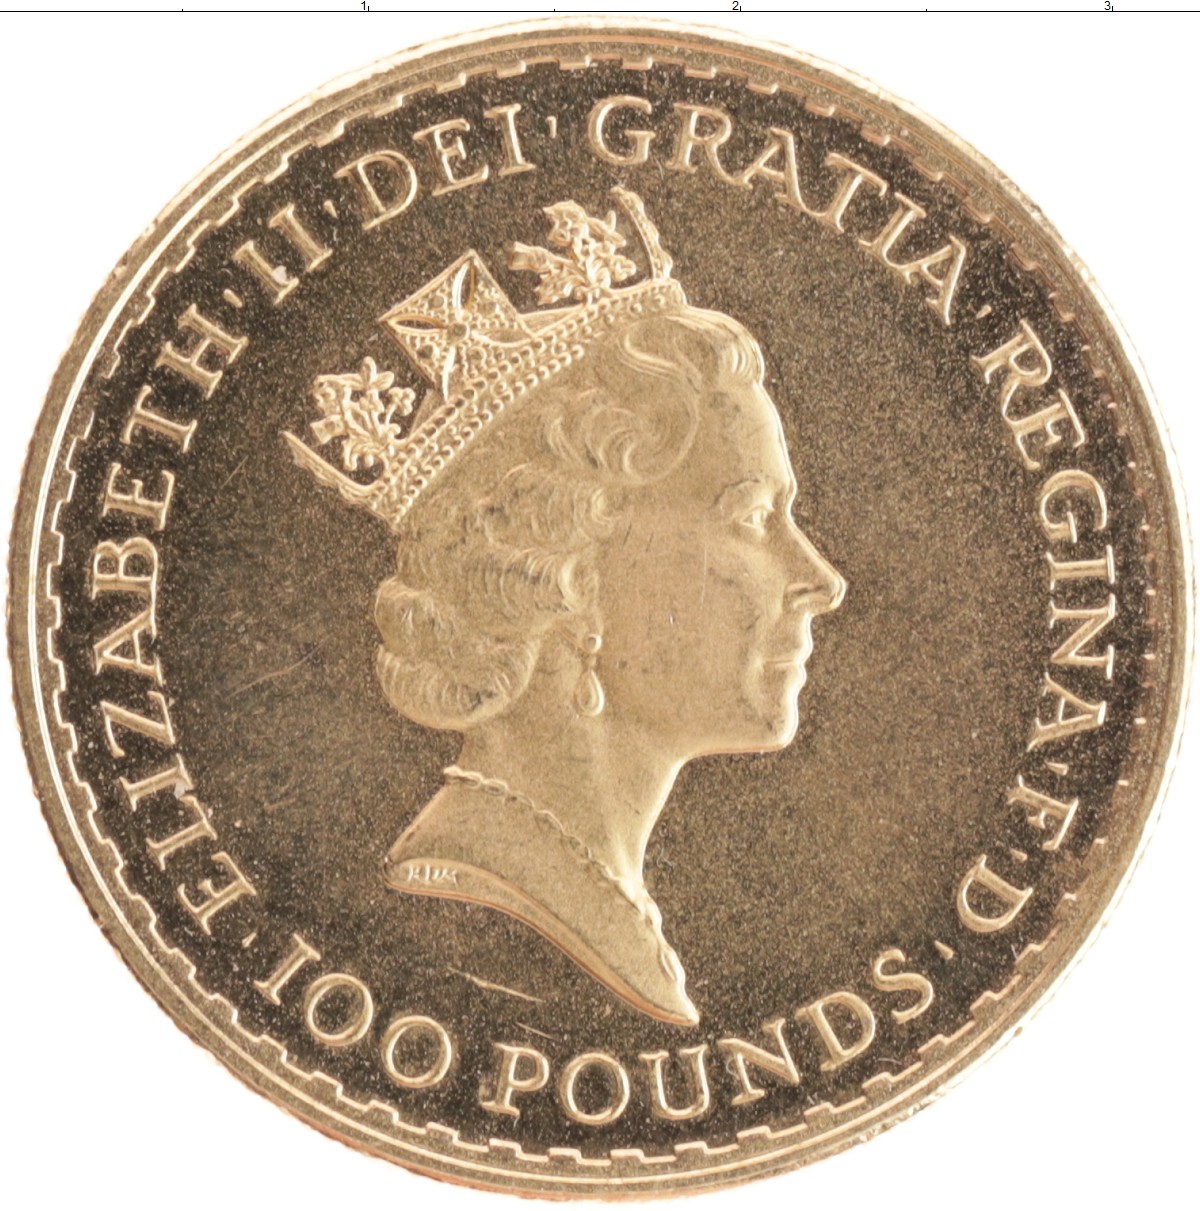 Uk 100. Монета 100 фунтов Великобритания. Великобритания 1989.